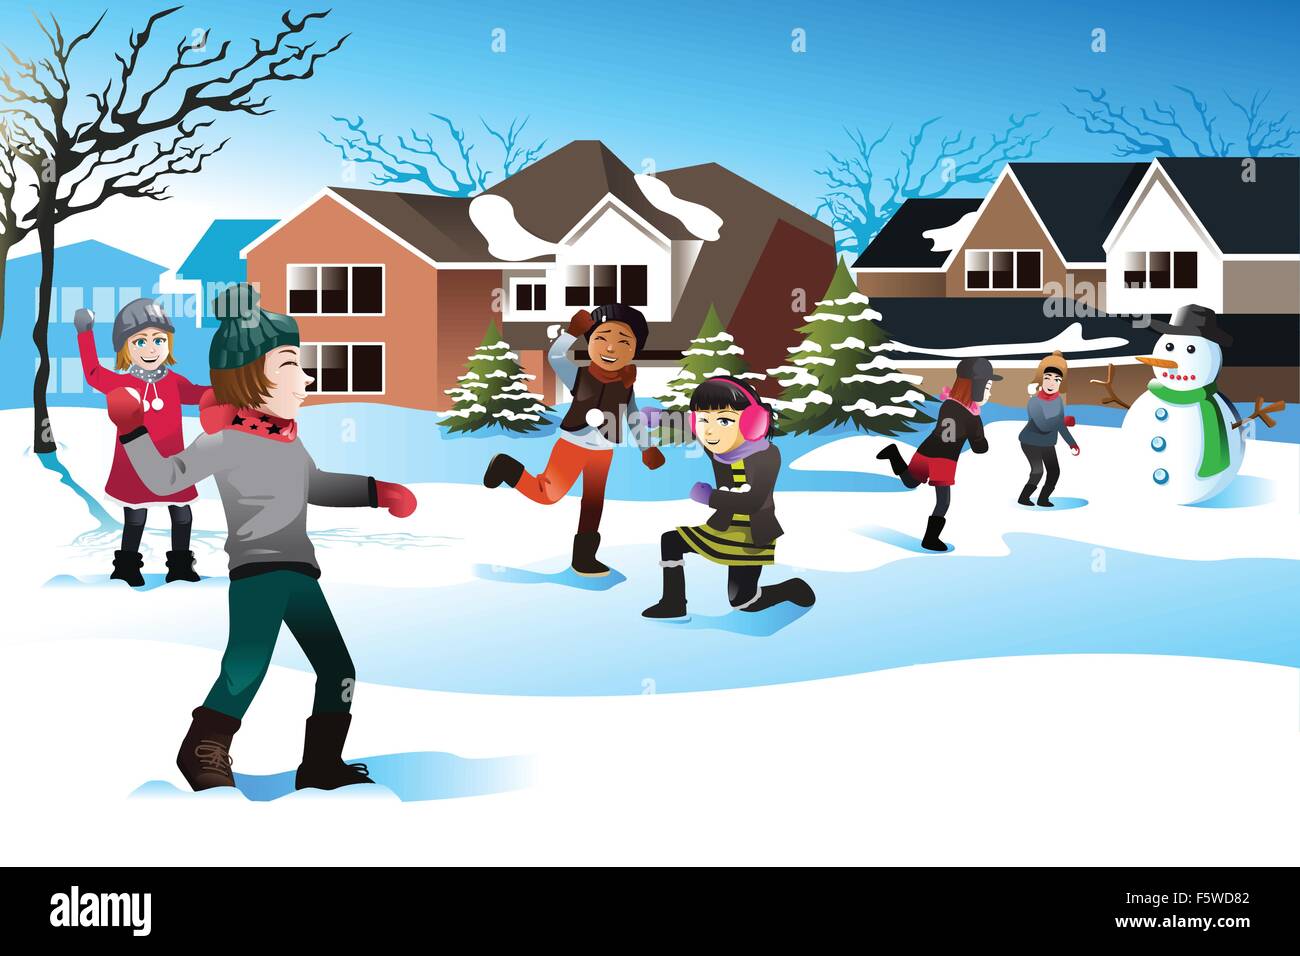 Eine Vektor-Illustration der glückliche Kinder Schnee Ball kämpfen zusammen spielen Stock Vektor